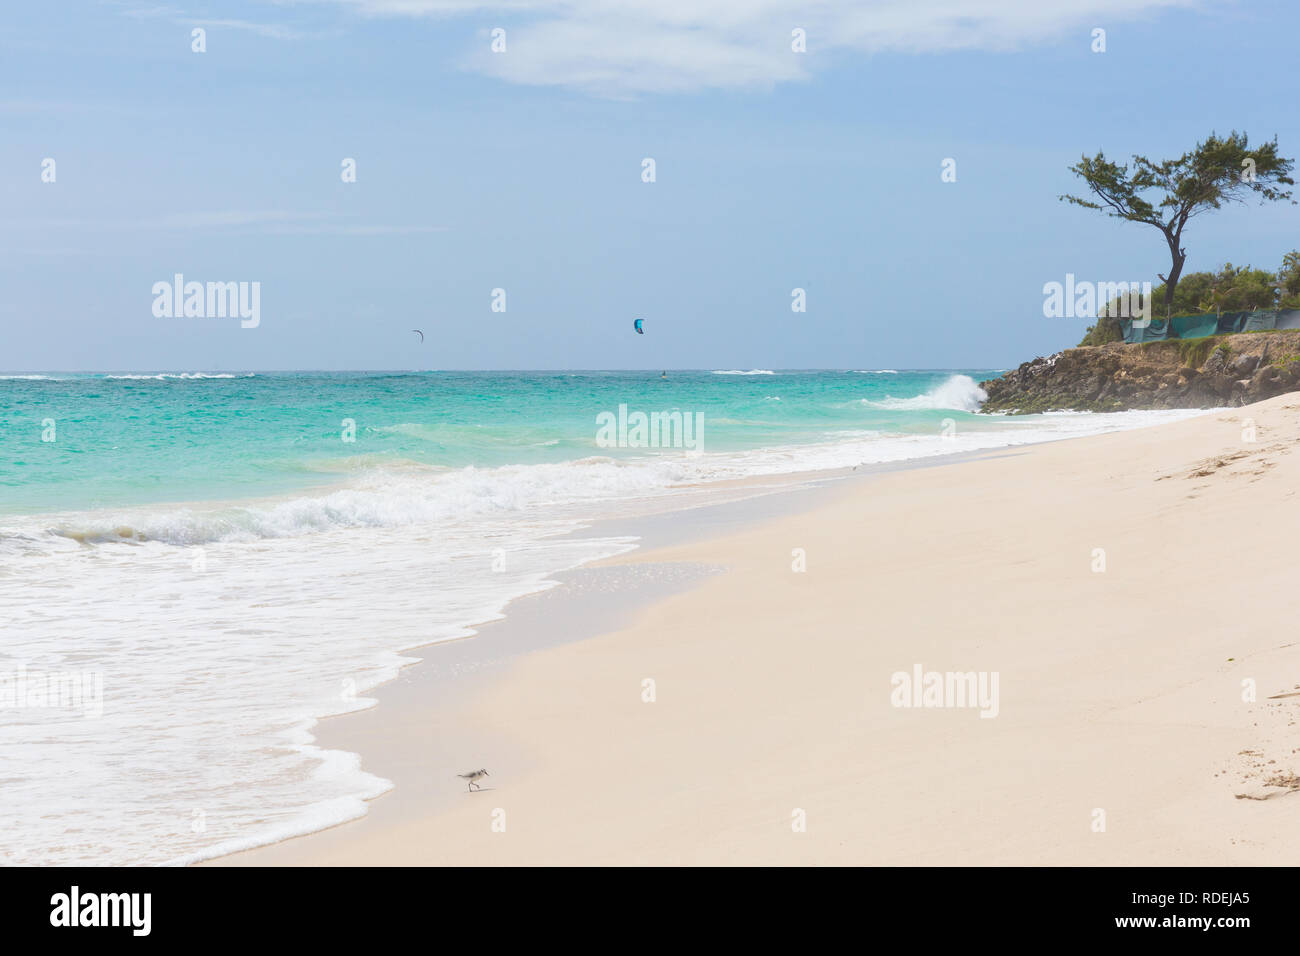 Une plage blanche à Silver Sands, Barbade. Vagues sur l'océan. Les kitesurfers jouent dans les eaux sûres au large des côtes. Banque D'Images